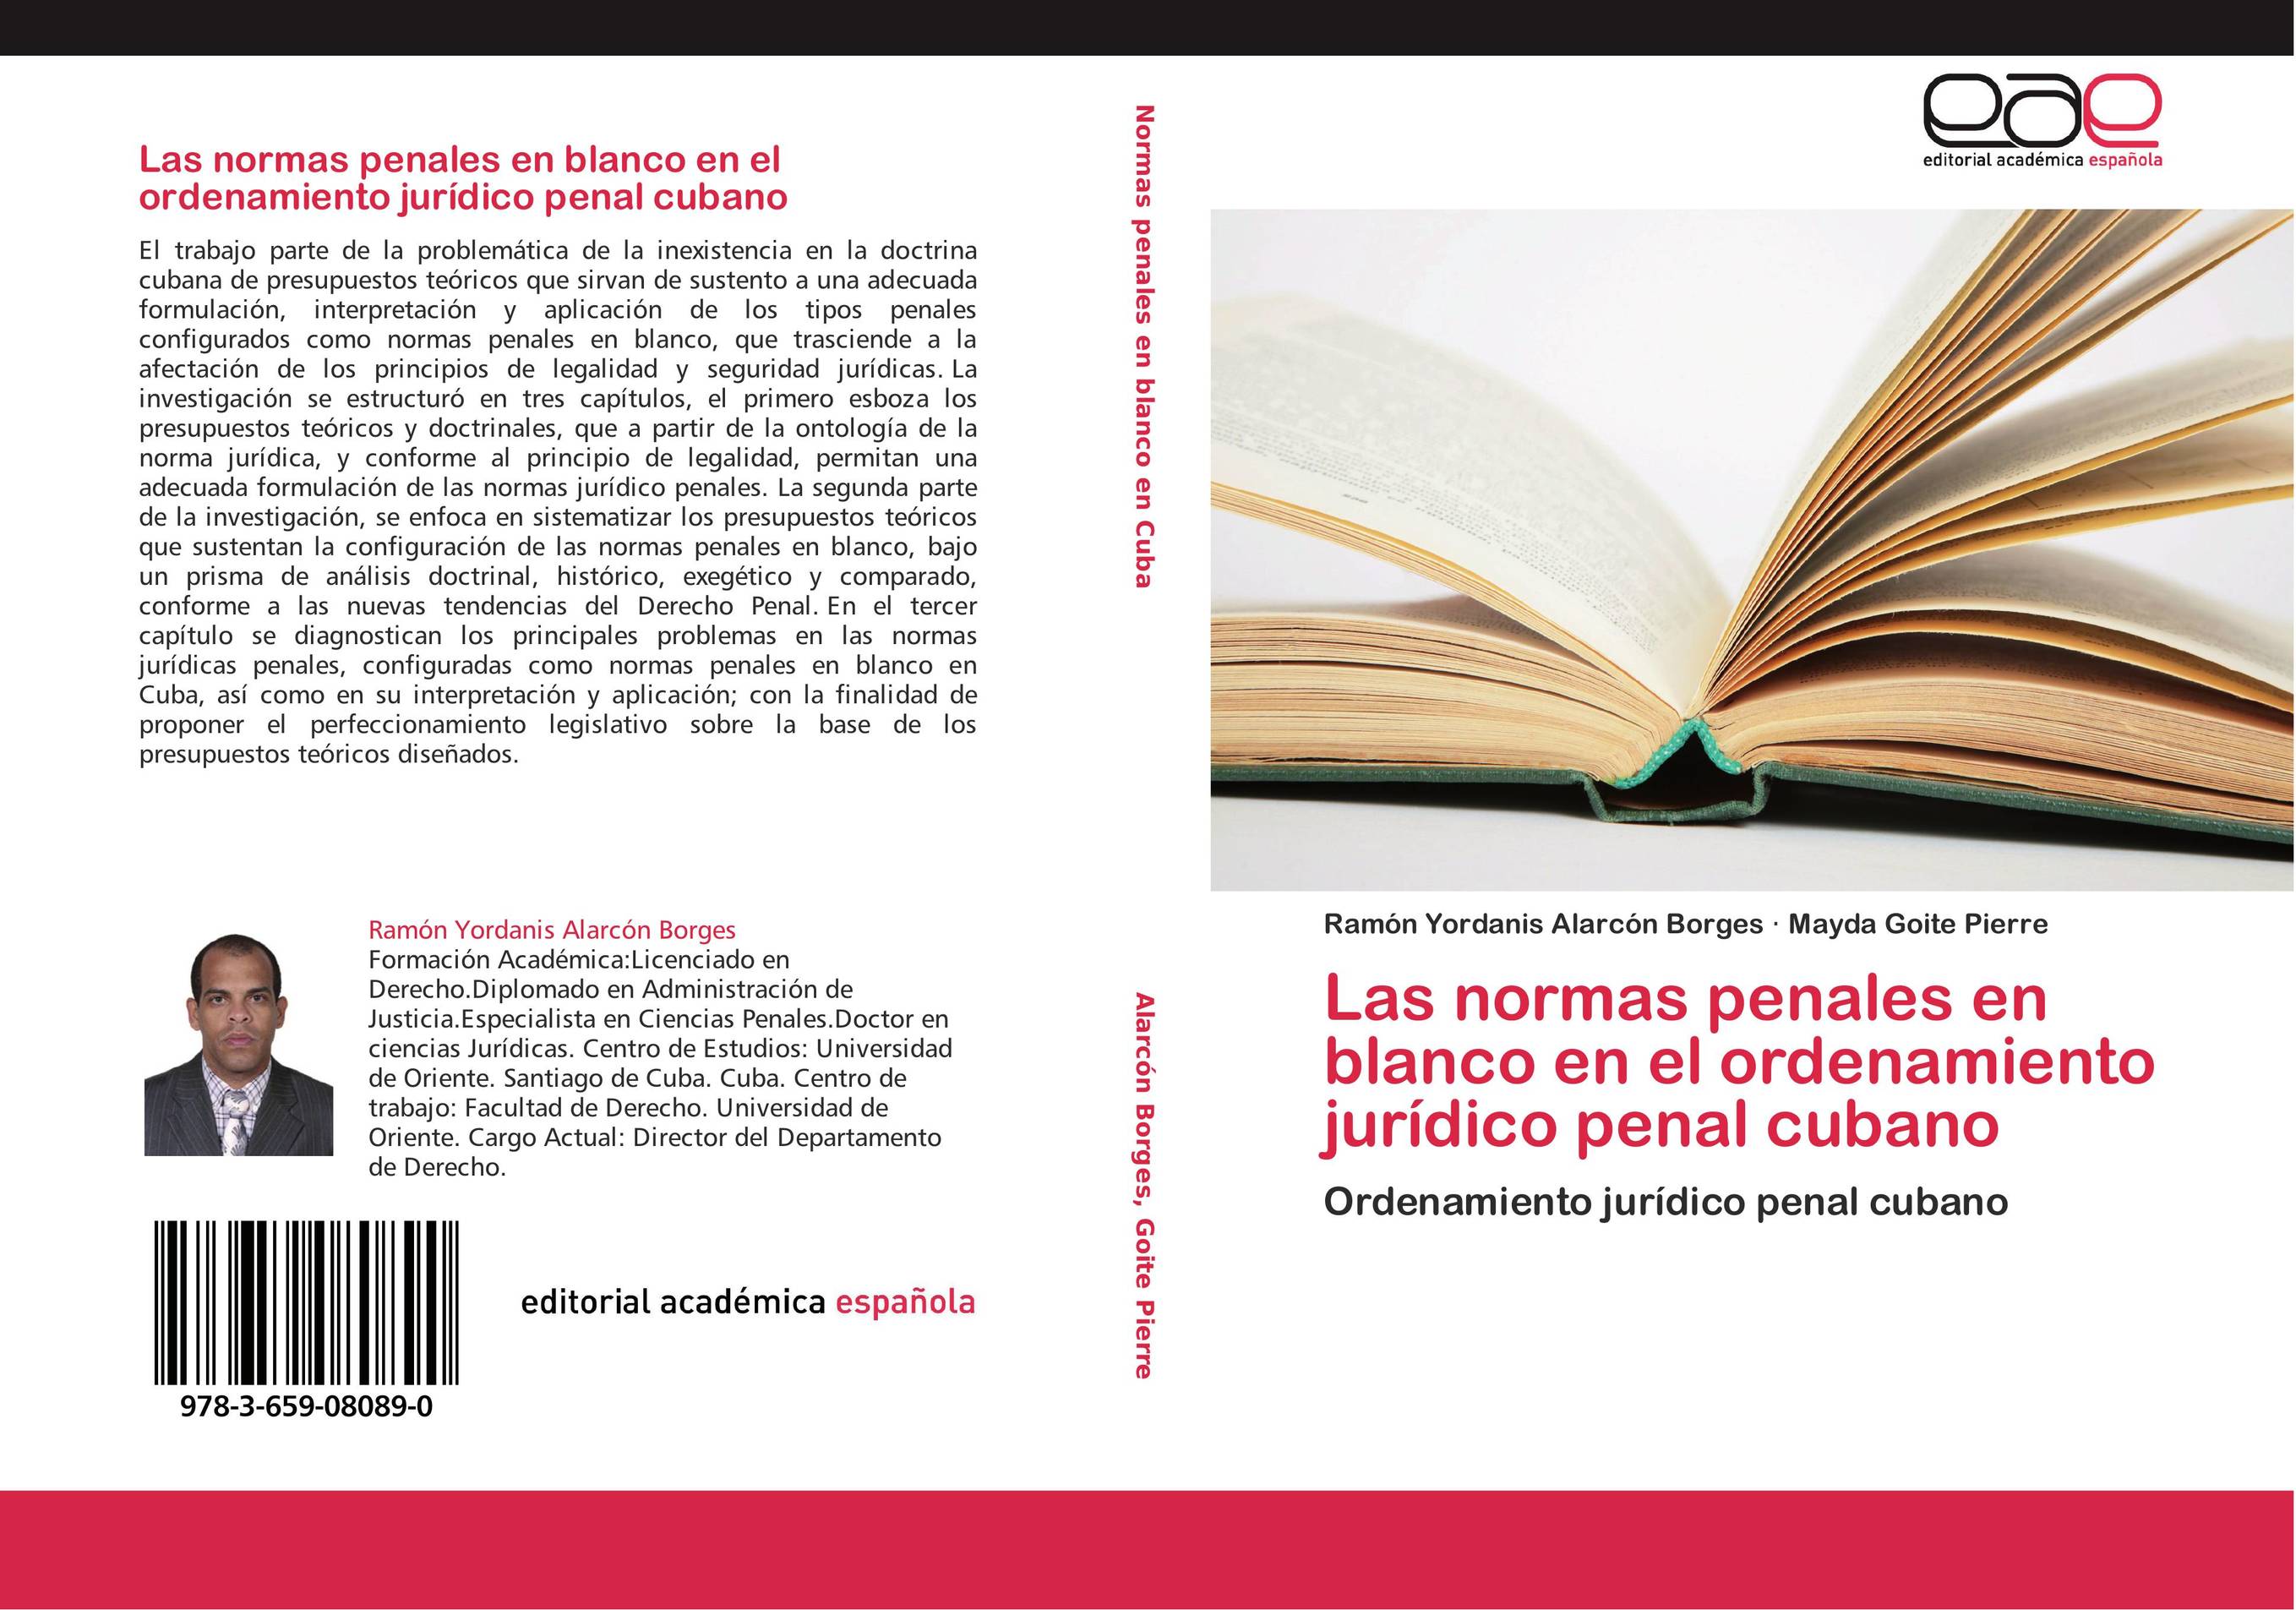 Las normas penales en blanco en el ordenamiento jurídico penal cubano